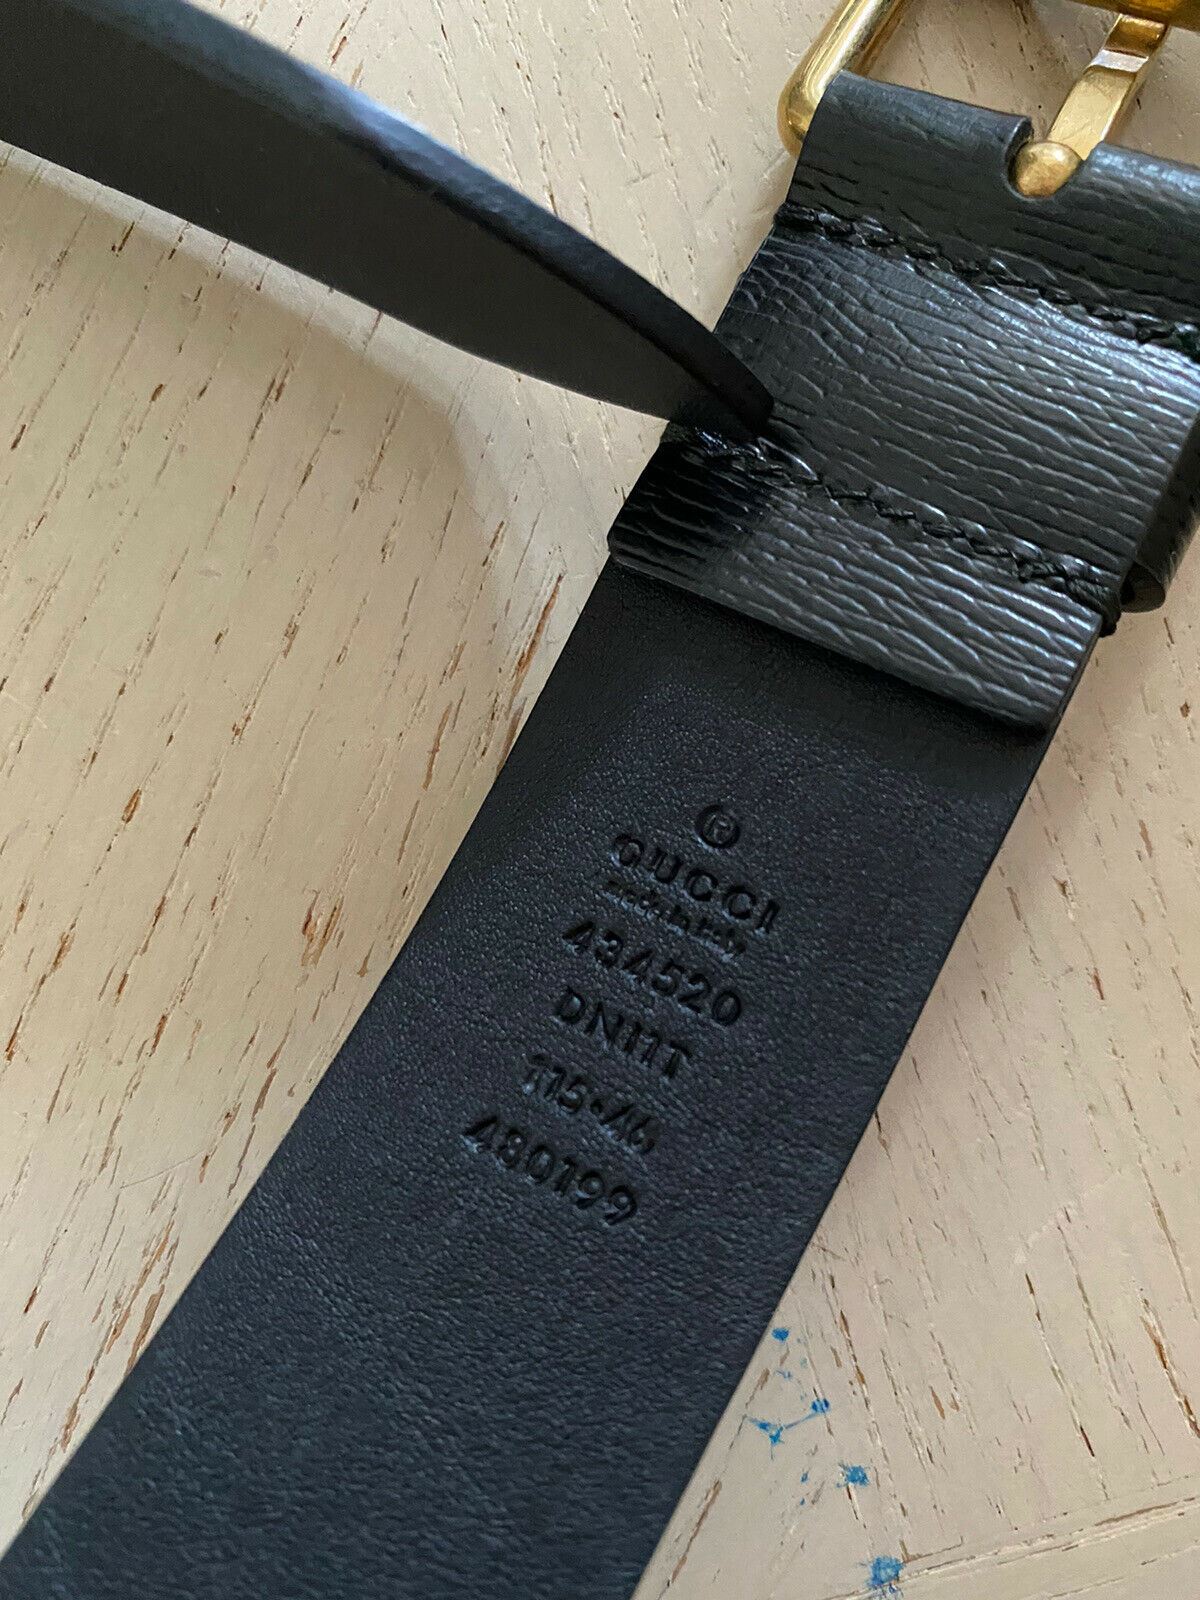 Новые мужские кроссовки Gucci Shangal Snake Leather Черные 115/46 Италия